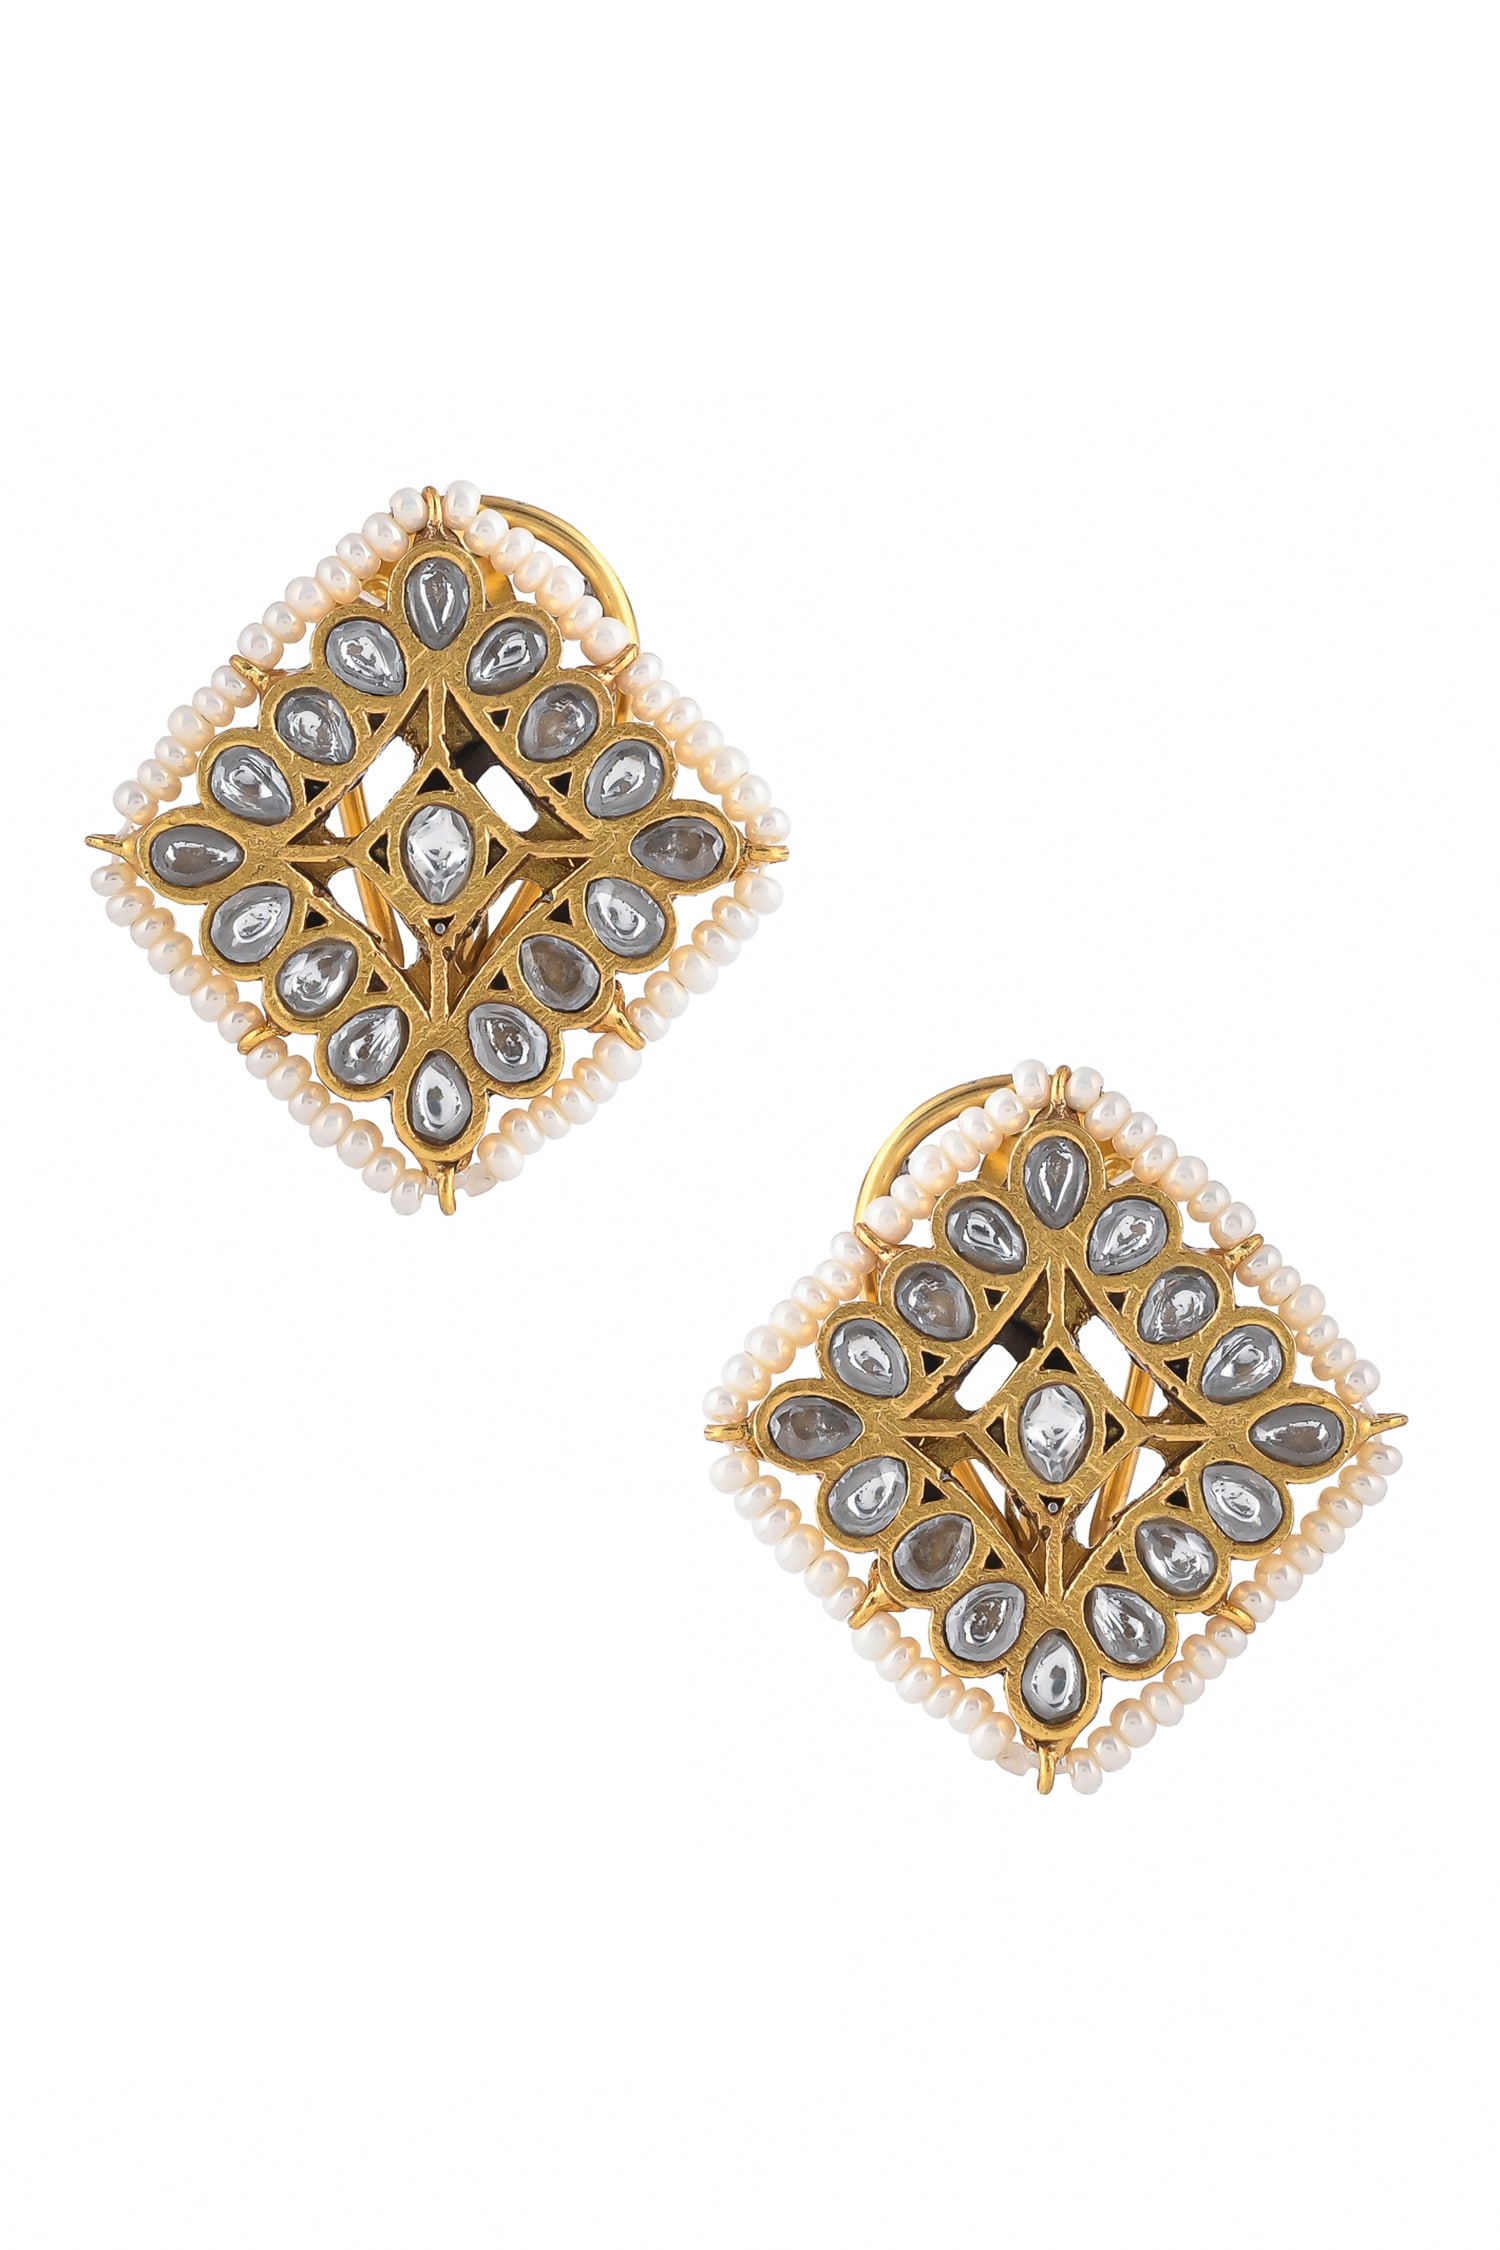 Ajooni Jewels - Gold Plated Kundan Embellished Stud Earrings